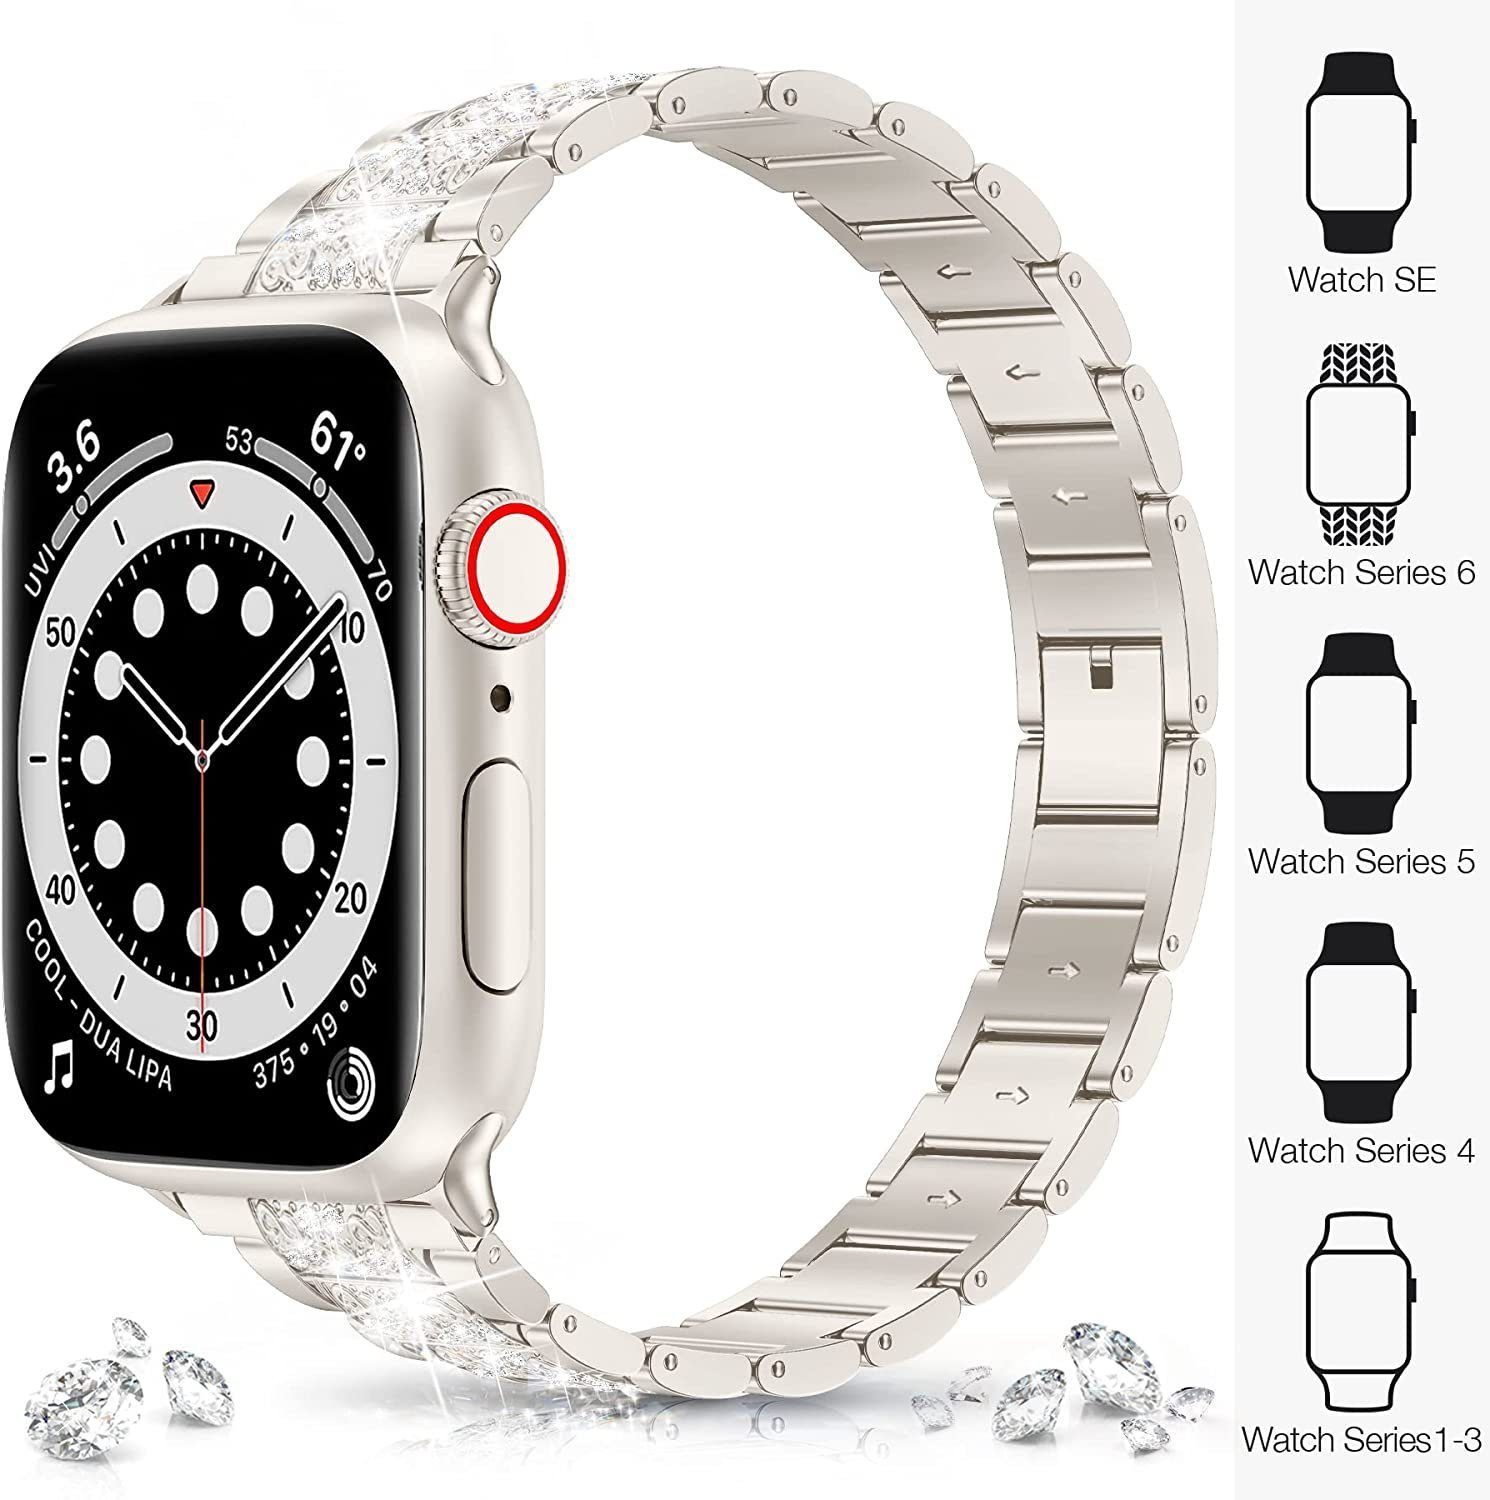 mm-45 Sternenlicht Für Watch mm,42 Serie ELEKIN mm-38 mm 7654321 Smartwatch-Armband Apple Armband,41